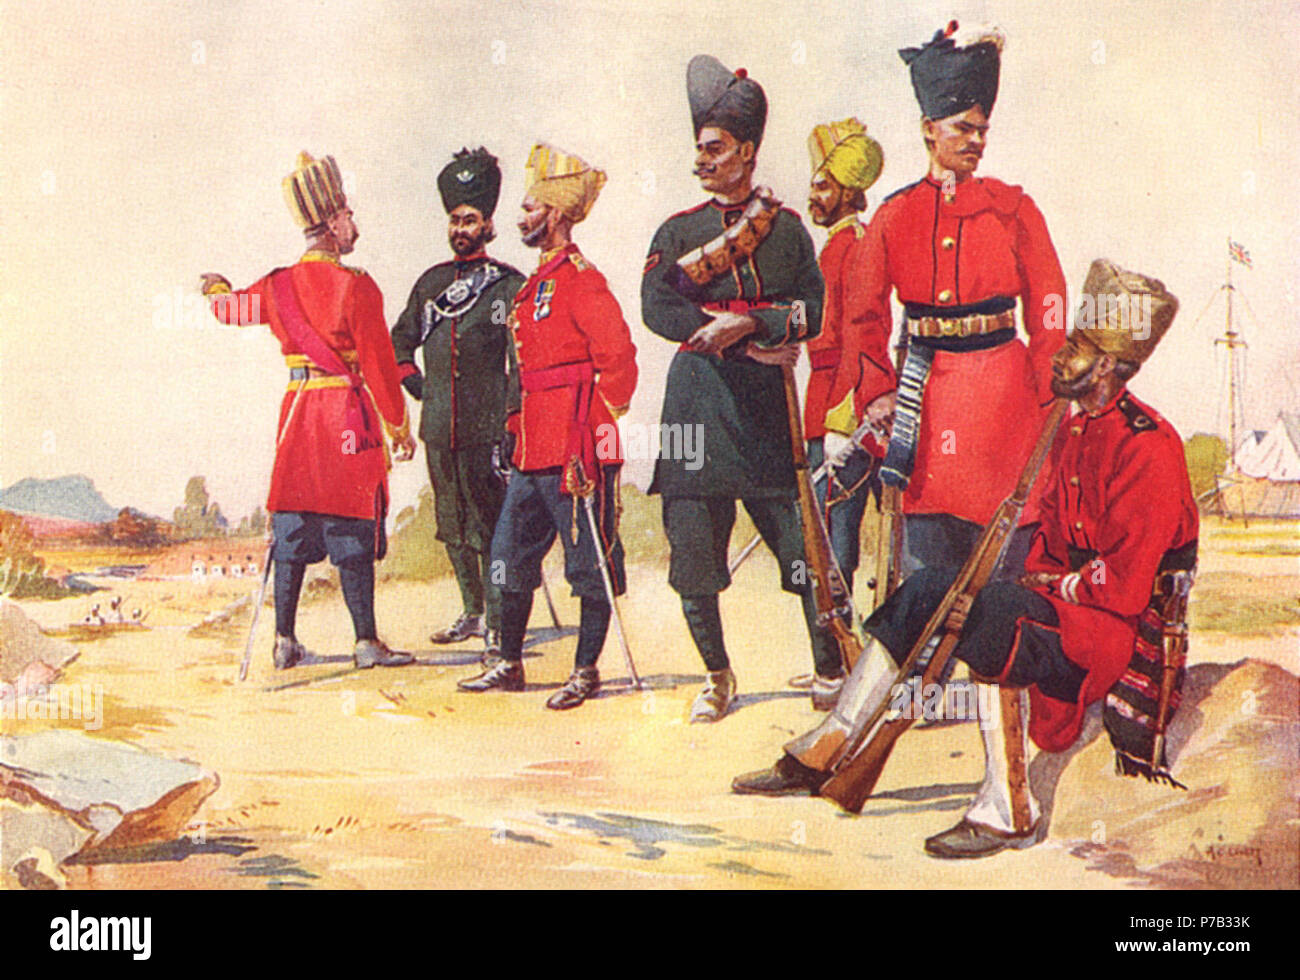 Anglais : l'inscription de divers régiments d'infanterie de Rajputana. De gauche à droite : Subadar-Major du 113ème infanterie ; Subadar-Major du 104e Wellesley's Rifles ; Subadar du 119e Régiment d'infanterie (le Multan) ; Lance Naik du 123e Outram's Rifles ; Subedar de la 112e Infanterie ; membre de la 109e Infanterie ; membre de la 122e Infanterie Rajputana ; . 2 juin 2013, 14:31:42 66 aclovett infanterie Rajputana Banque D'Images